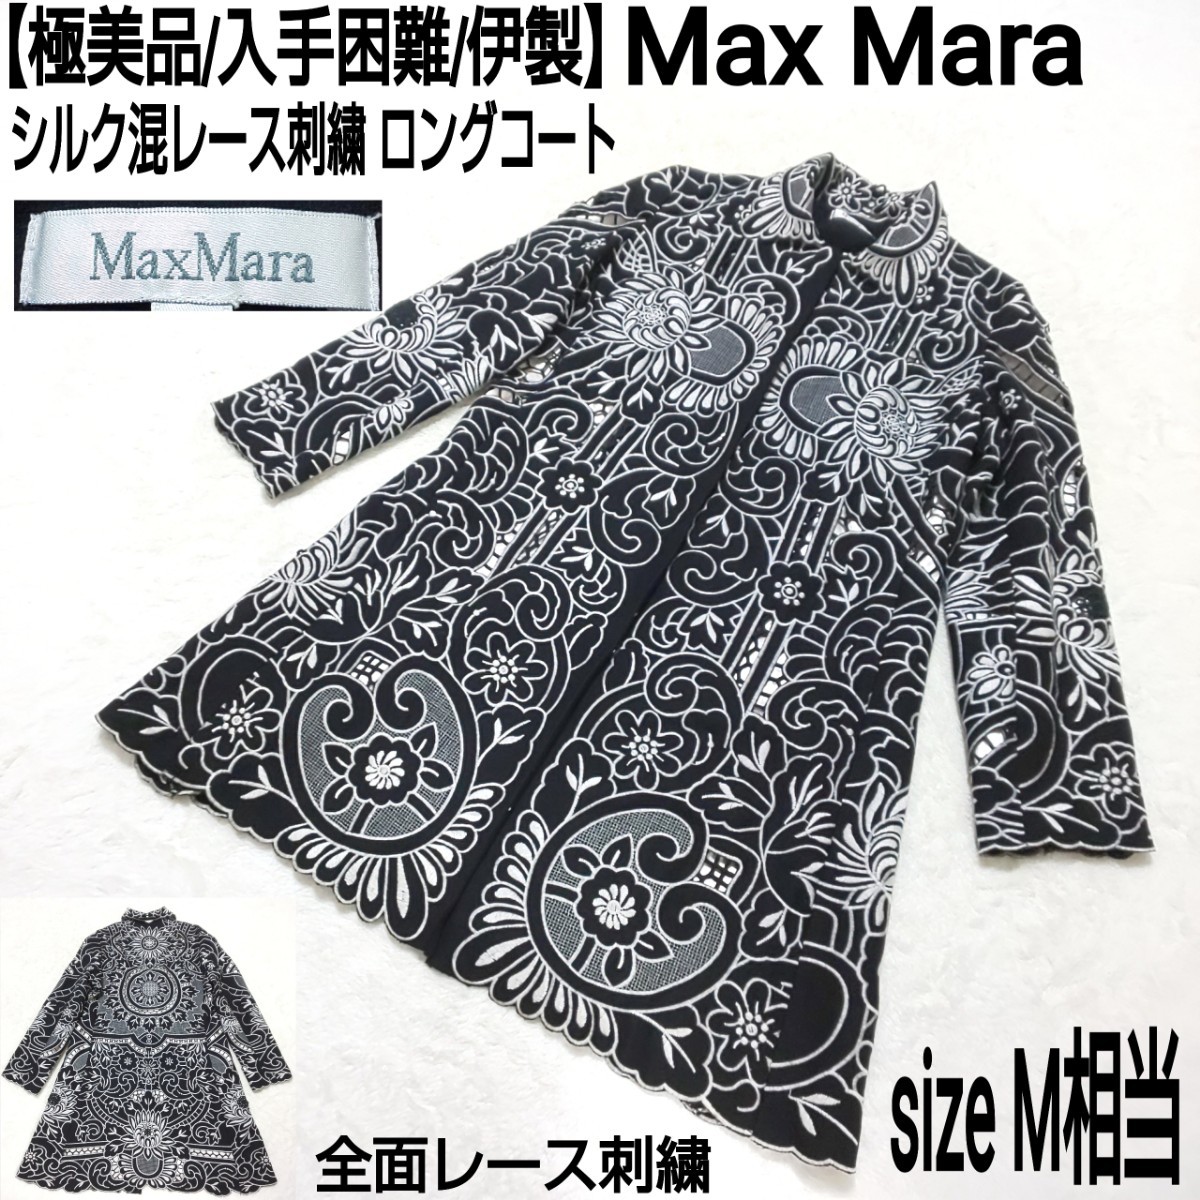 【極美品/入手困難】Max Mara マックスマーラ シルク混レース刺繍 ロングコート ステンカラーコート 総柄 伊製 ブラック×シルバー M相当の画像1